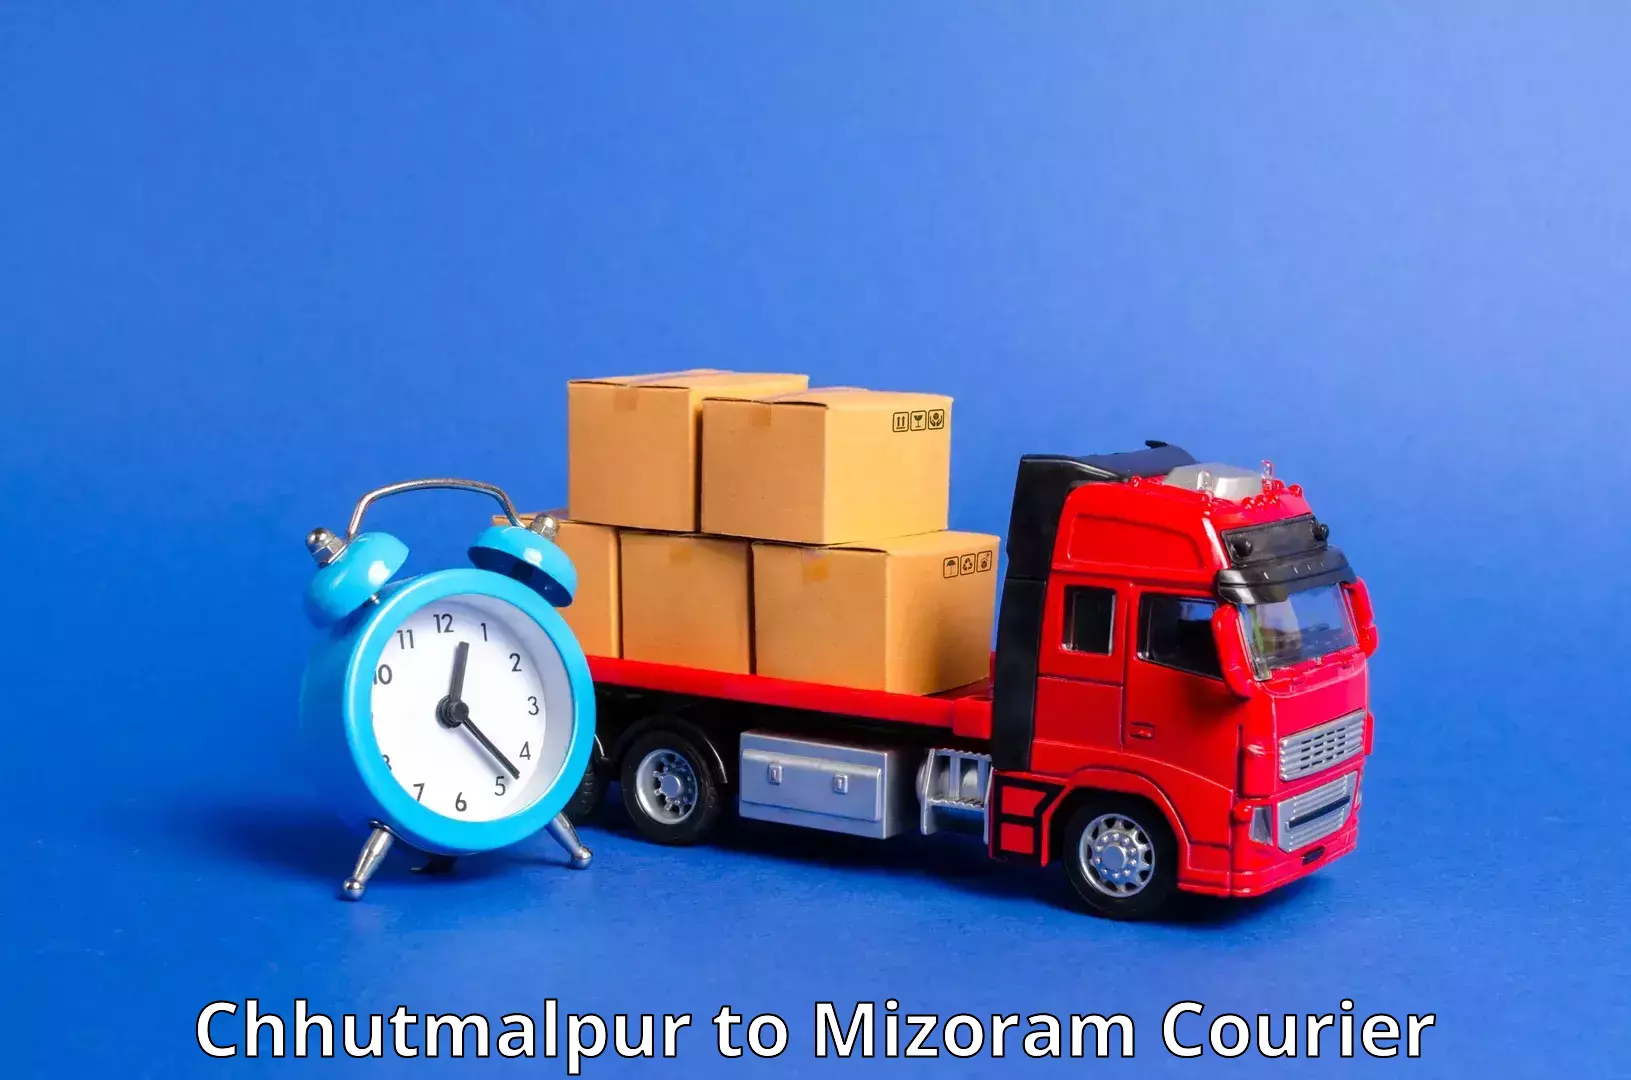 Urgent courier needs Chhutmalpur to Khawzawl